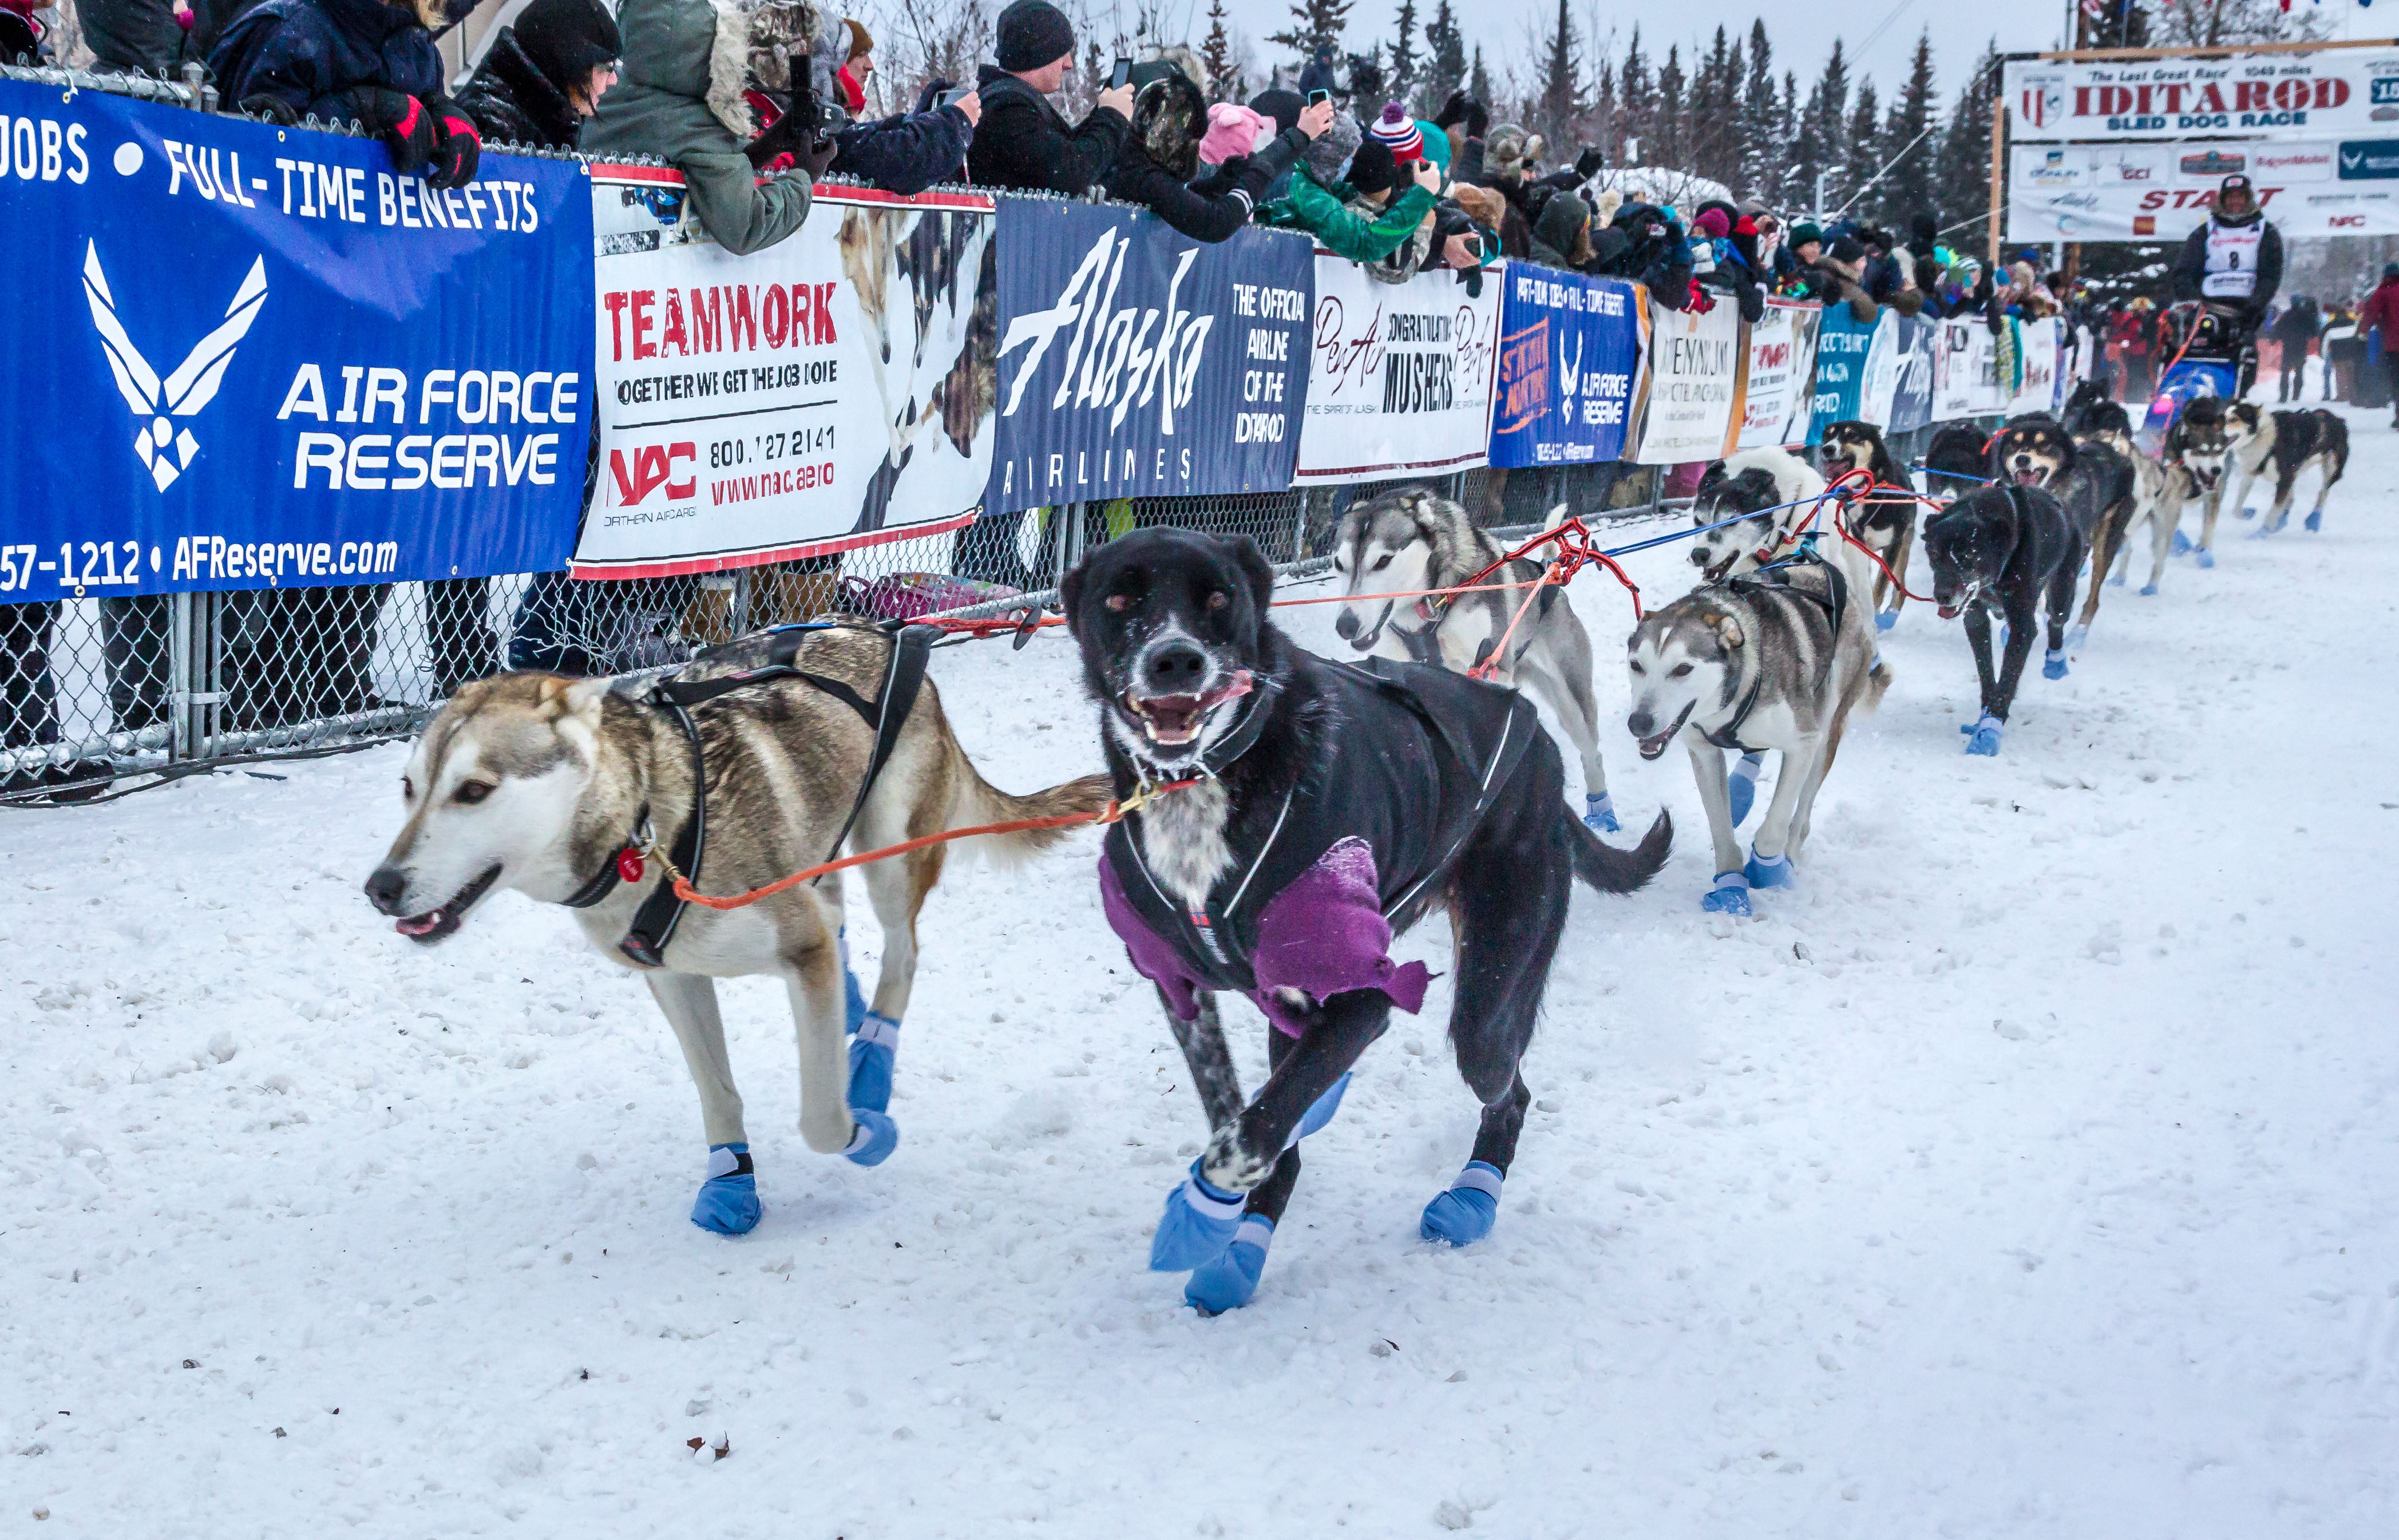 Kamionokkal kell havat szállítani a világ legnevesebb kutyaszánversenyéhez